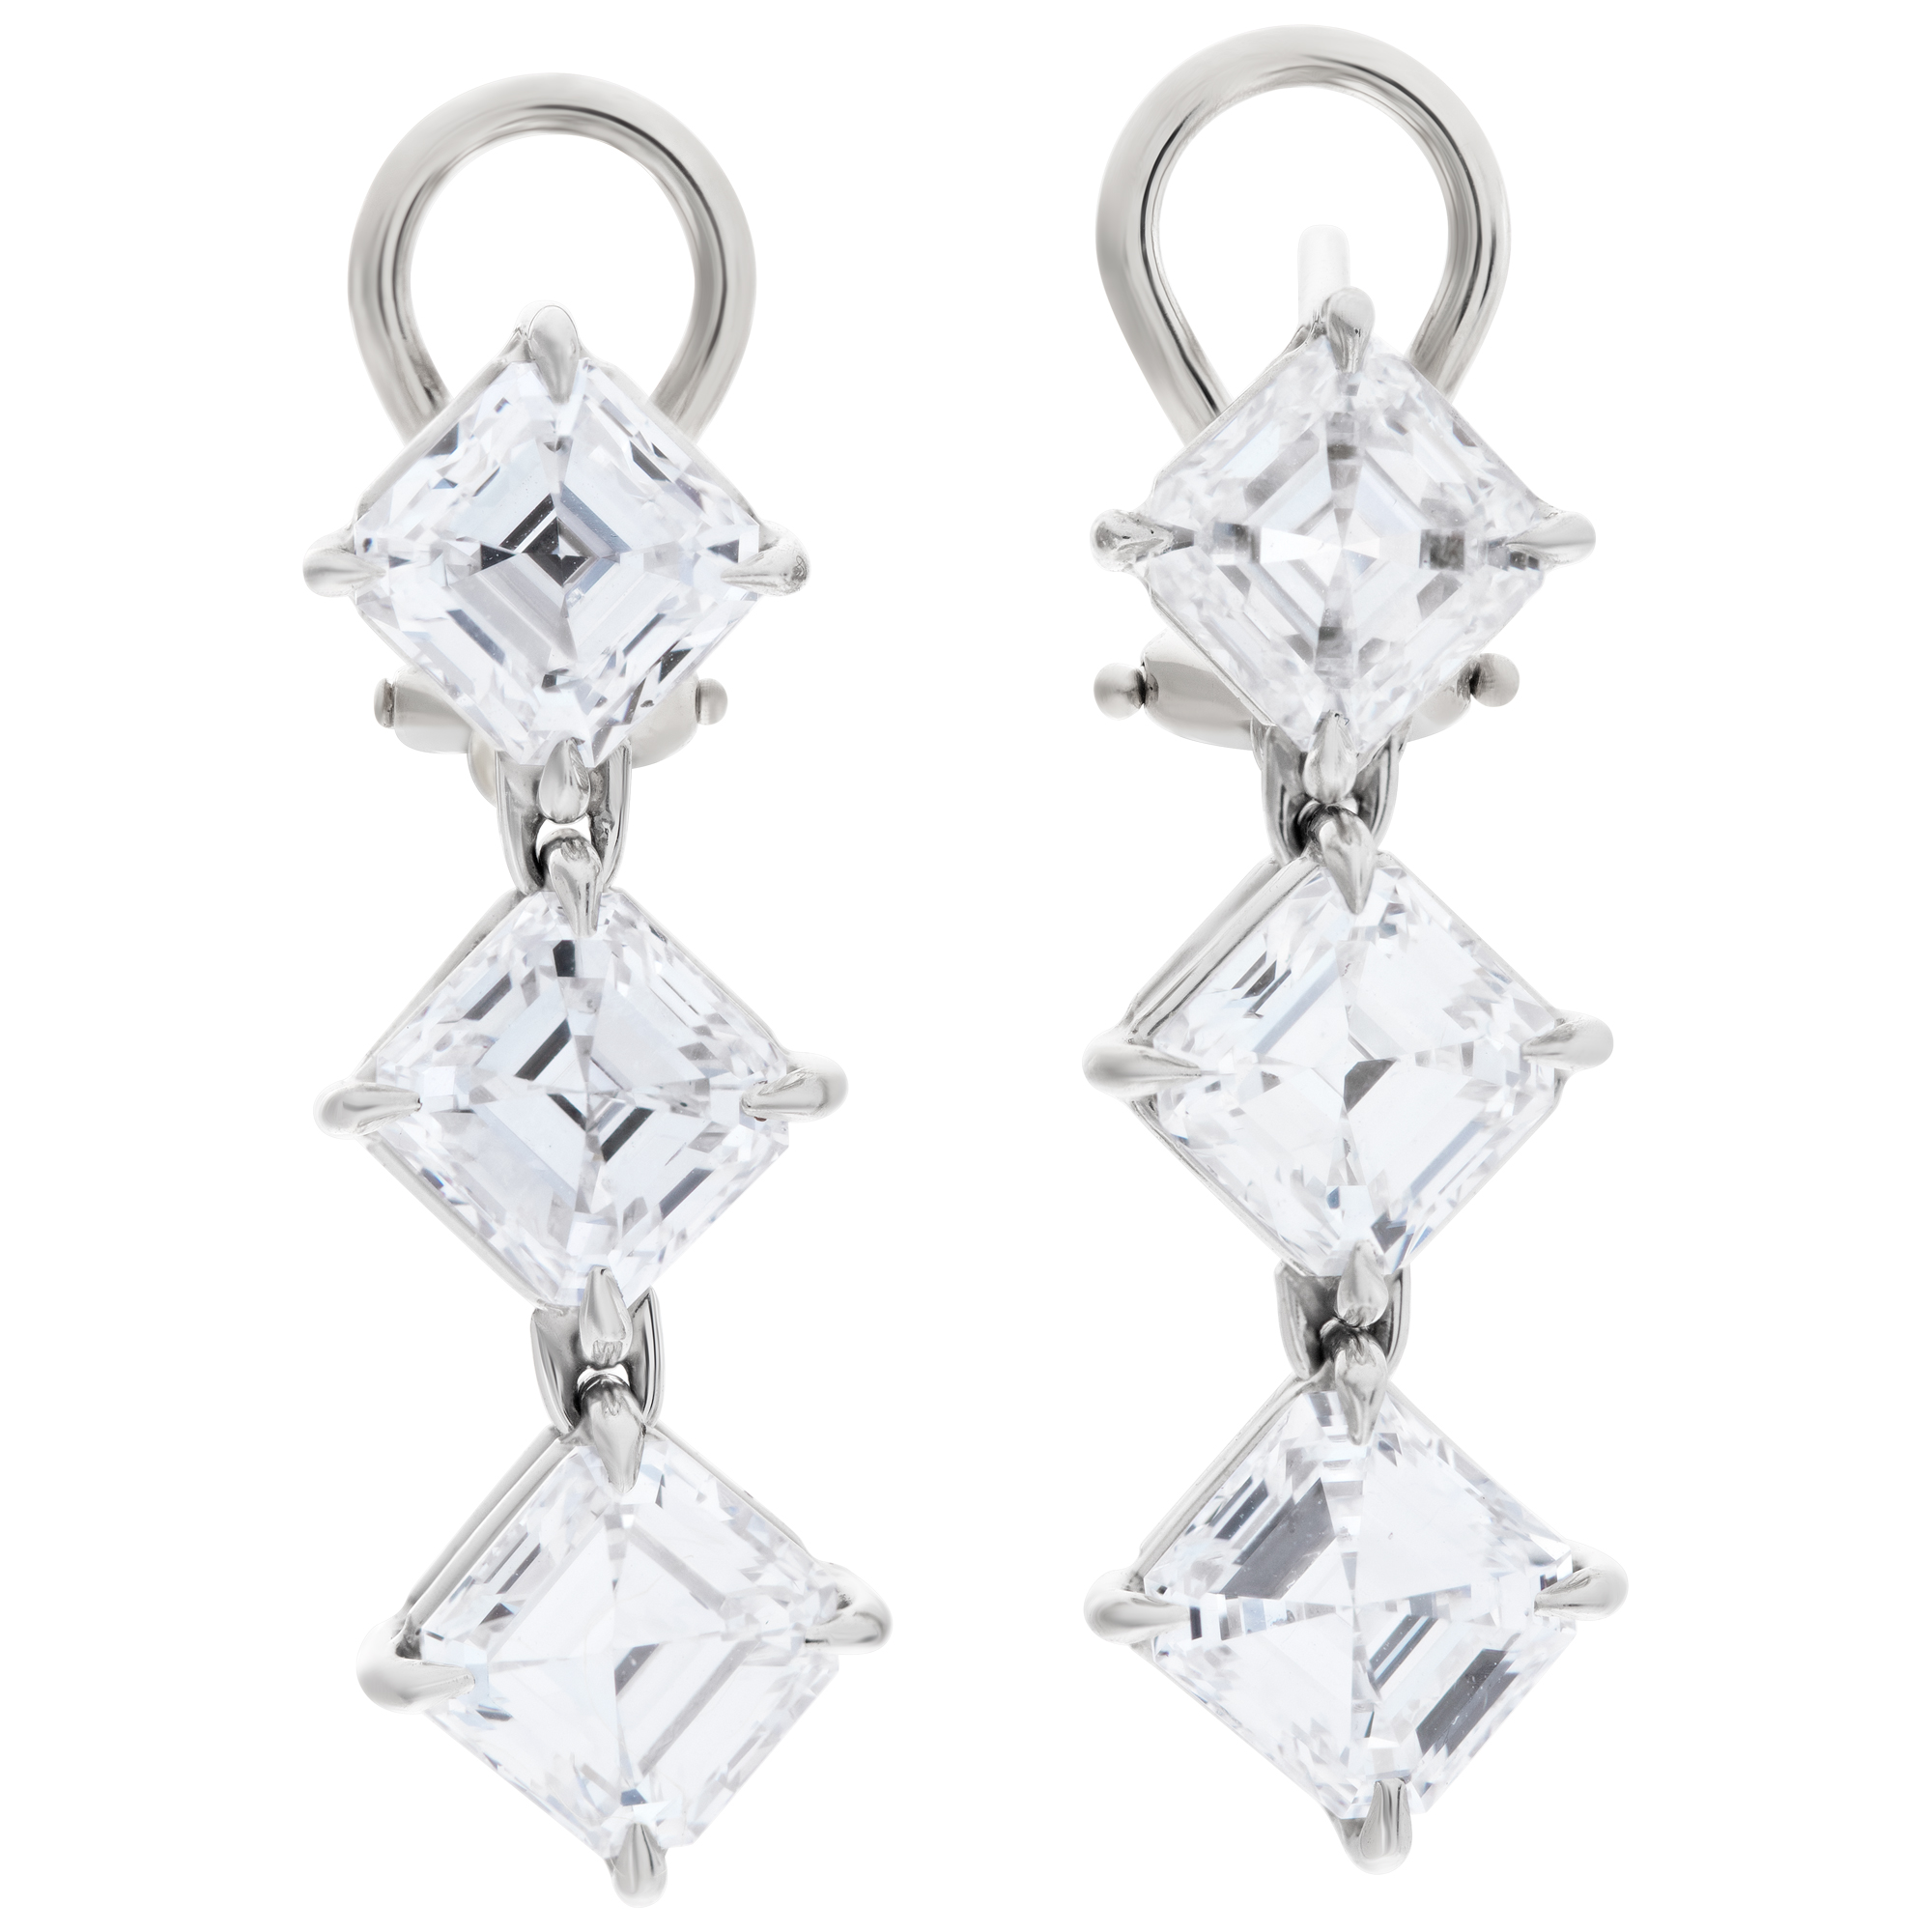 All GIA certified, 6 Asscher cut diamonds totaling 6.02 carats, set as dangling stud earrings, 14 K